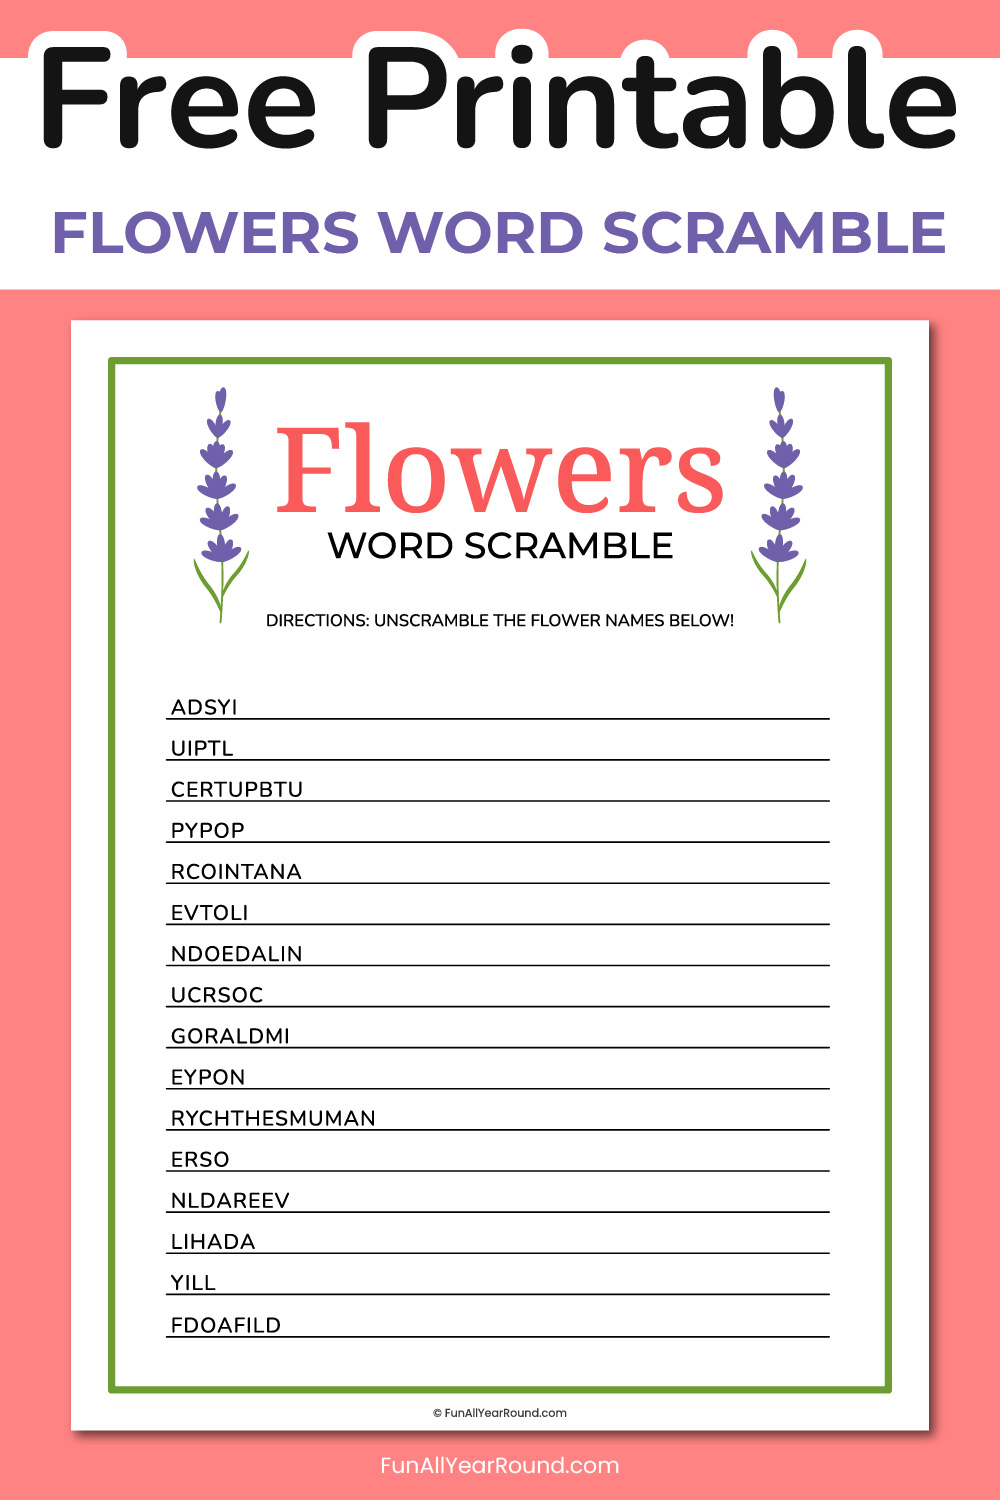 Printable flowers word scramble